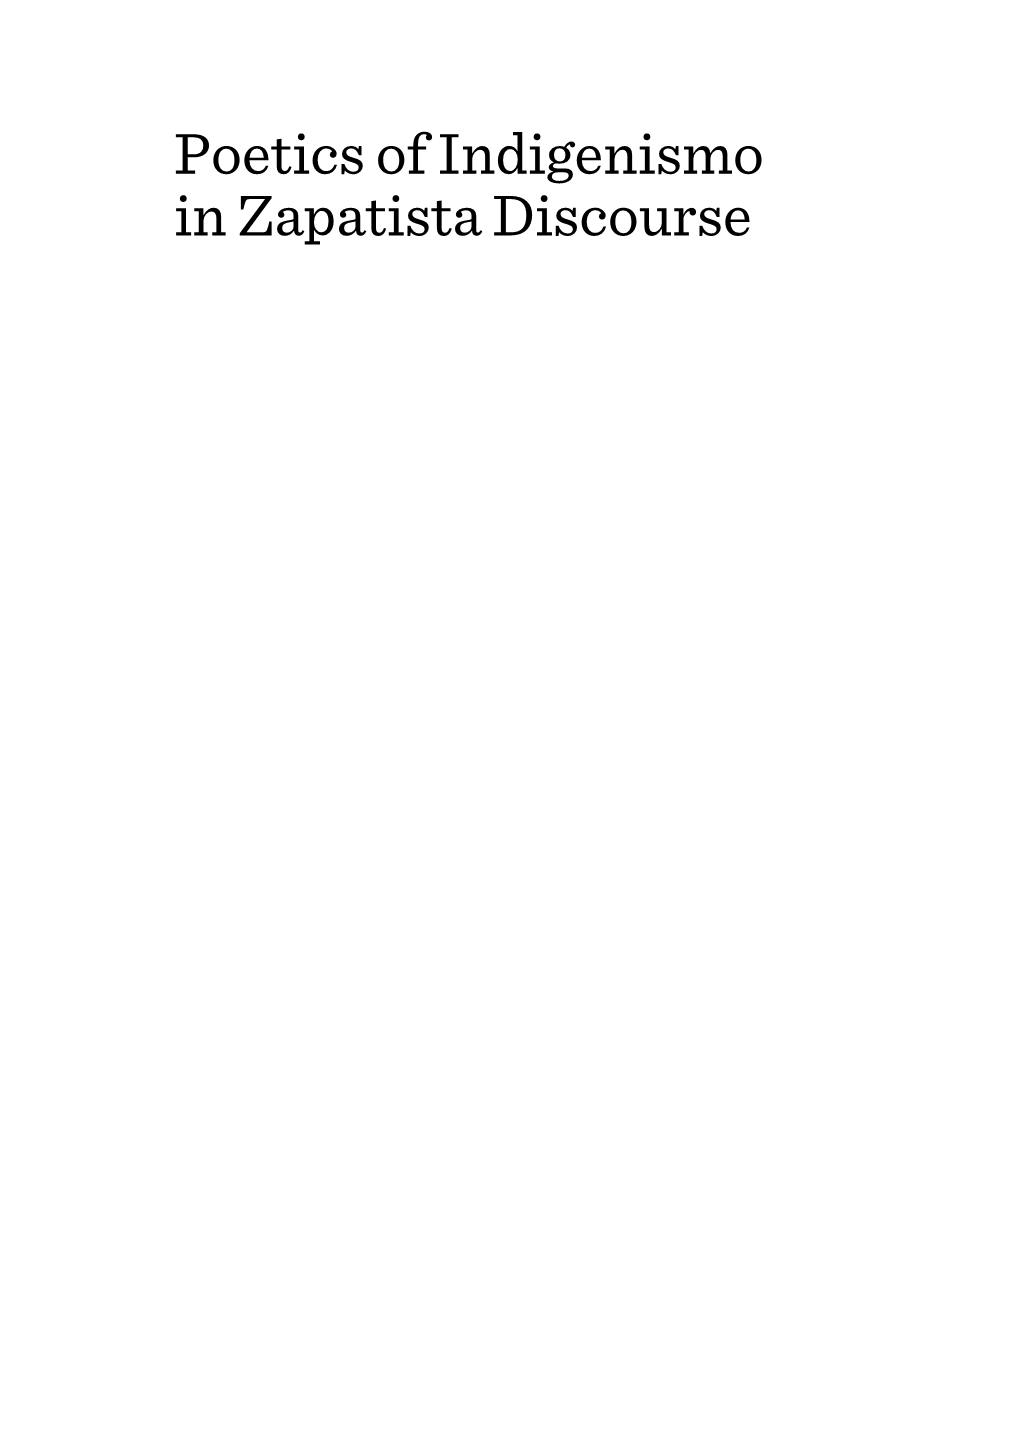 Poetics of Indigenismo in Zapatista Discourse